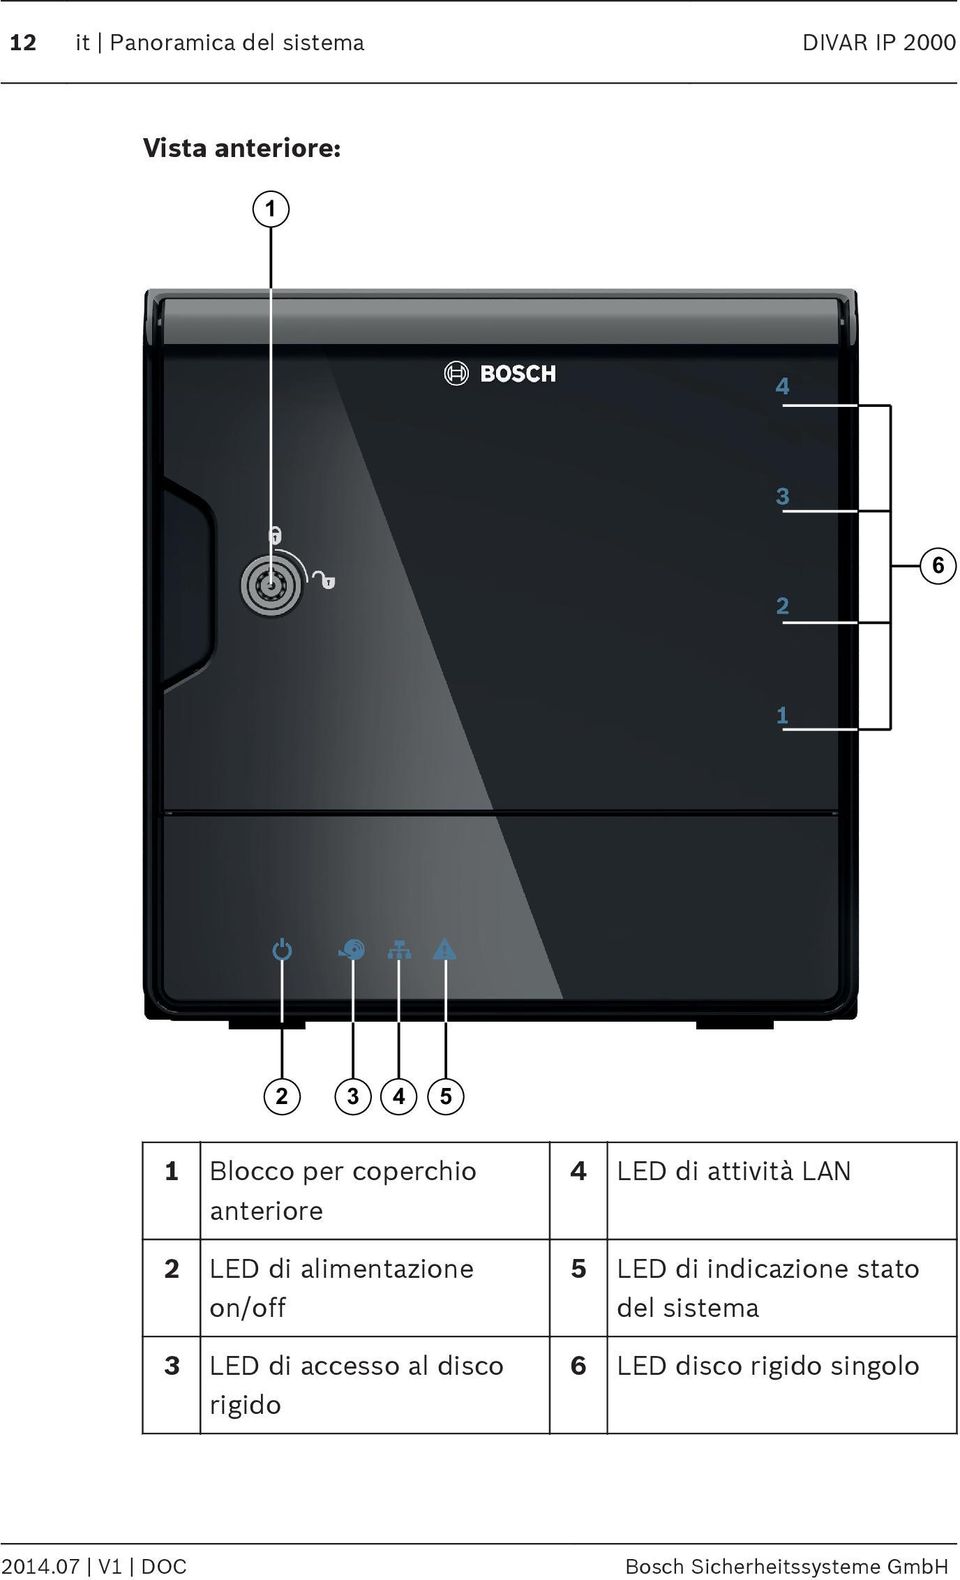 accesso al disco rigido 4 LED di attività LAN 5 LED di indicazione stato